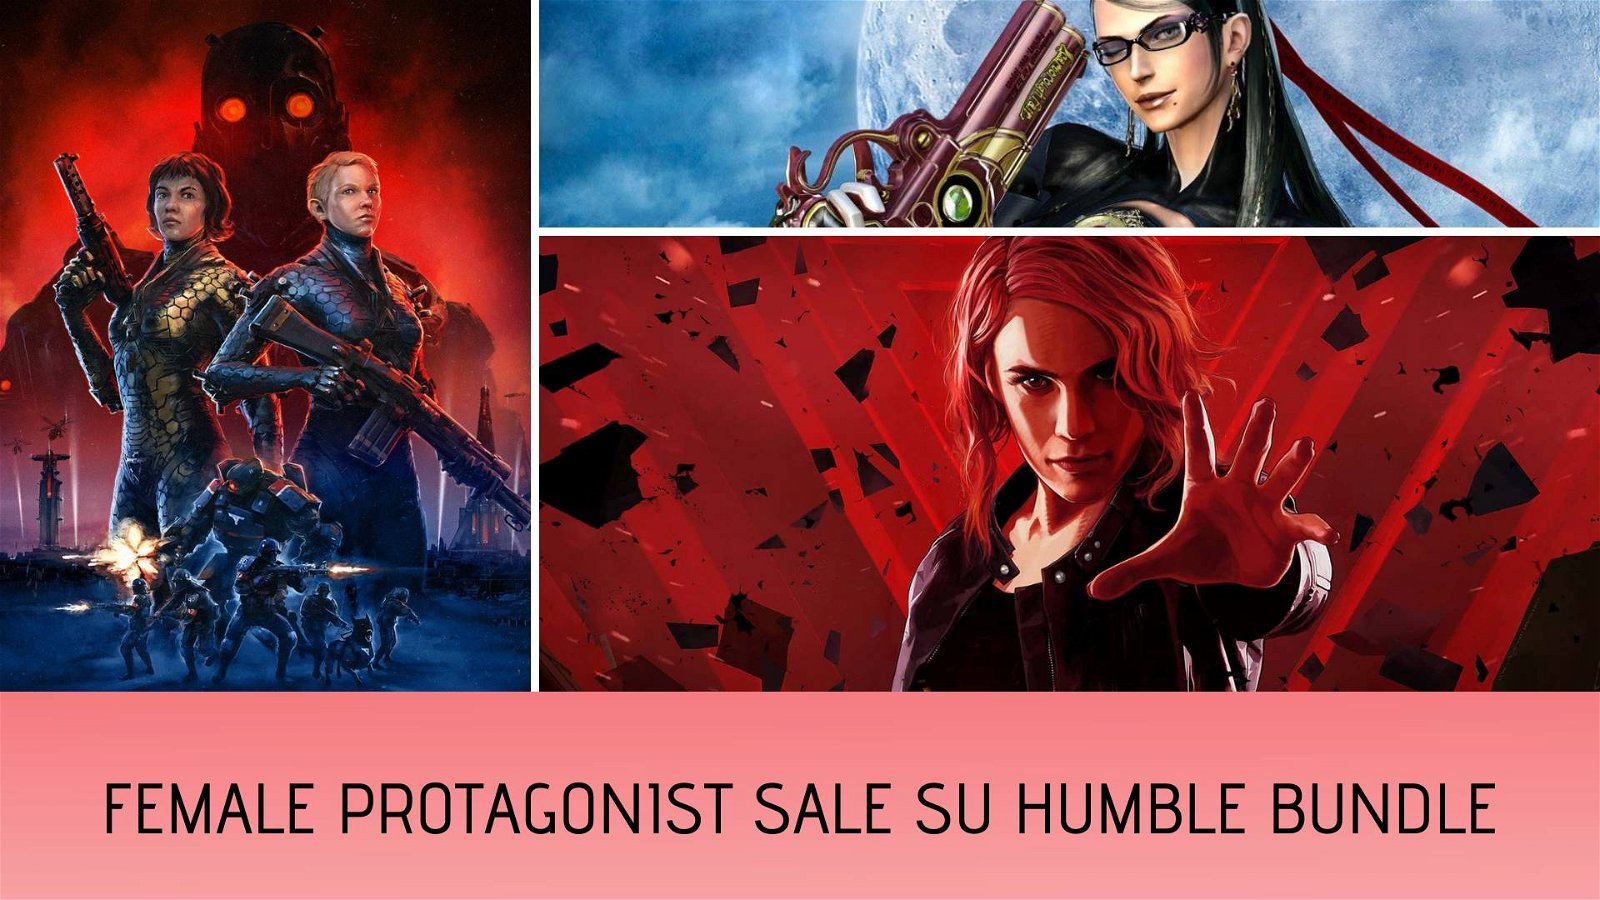 Immagine di Control, Tomb Raider e Wolfenstein scontati su Humble Bundle per la Female Protagonist Sale